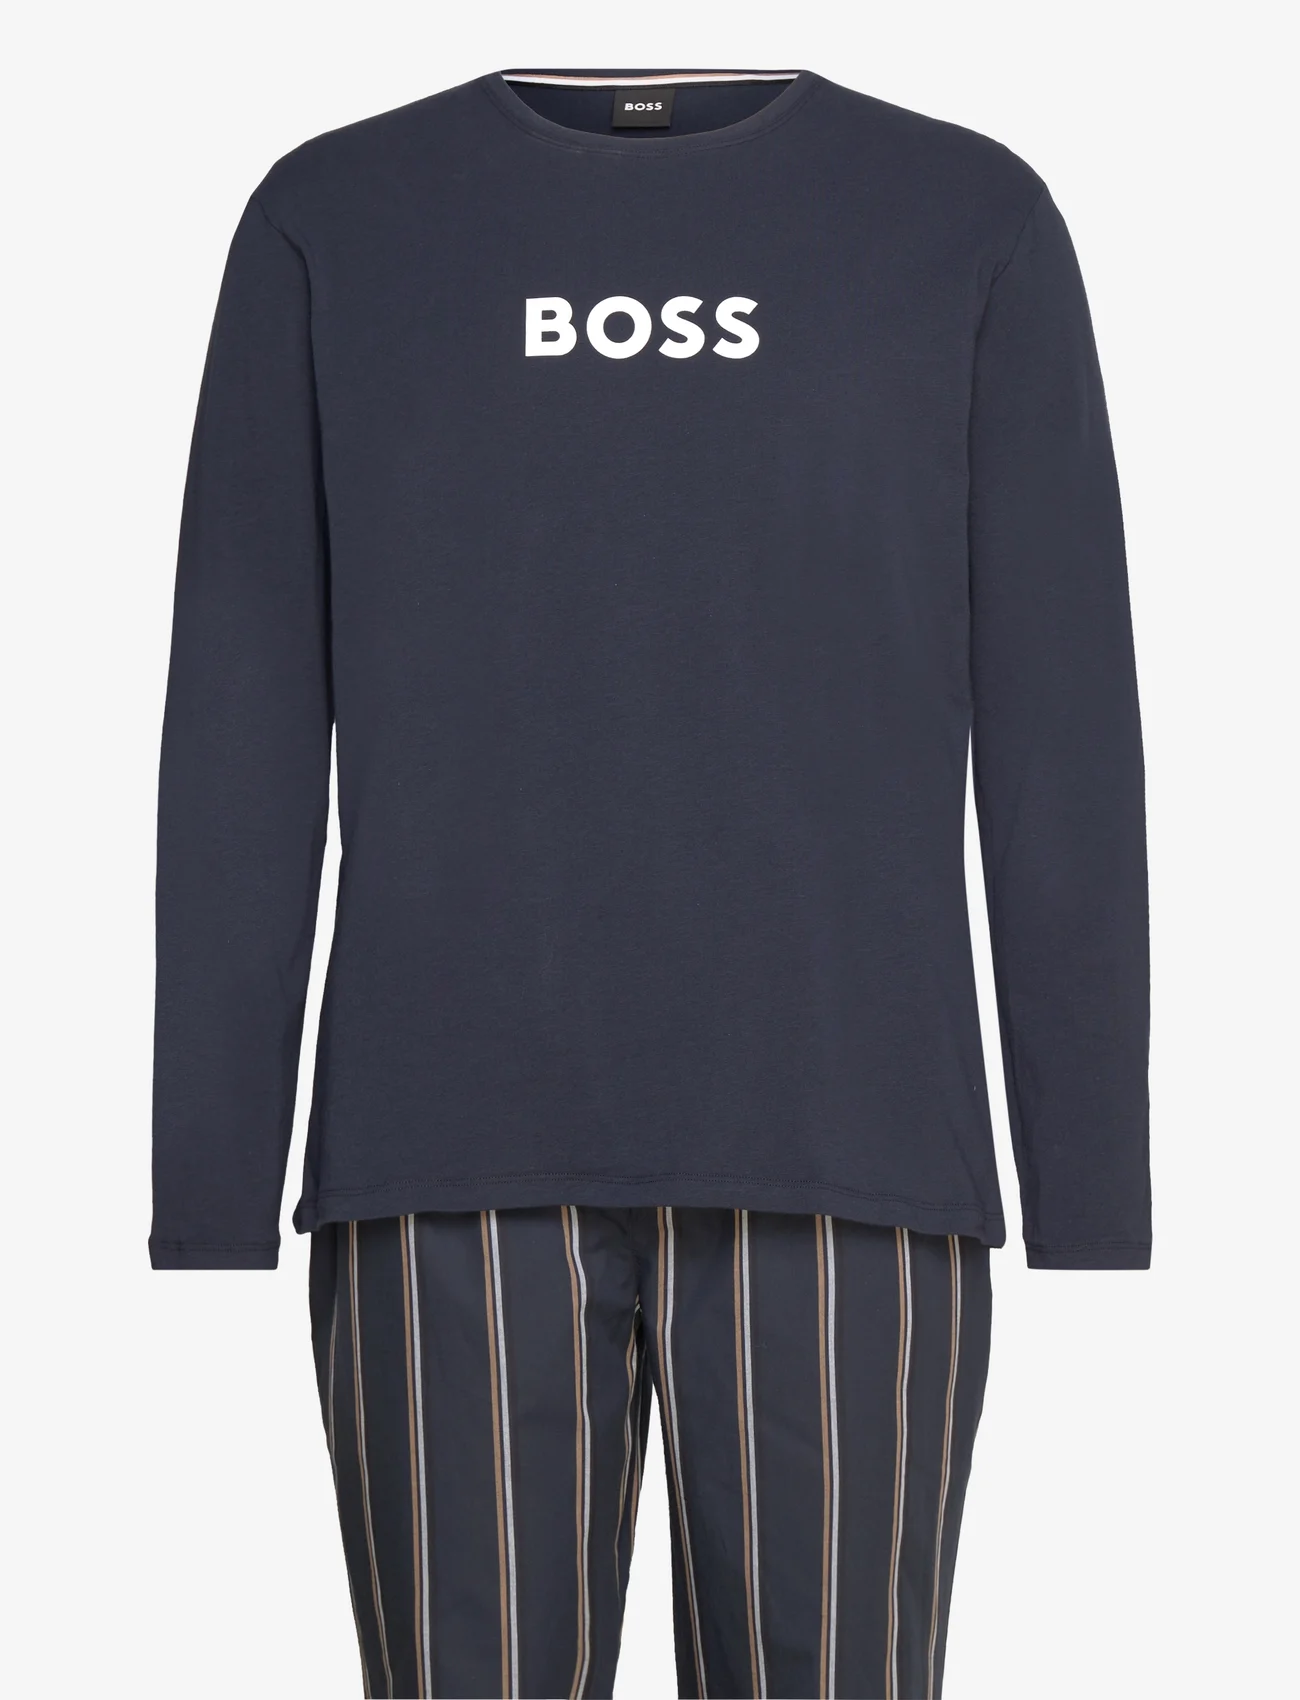 BOSS - Easy Long Set - zestaw piżamowy - open blue - 0